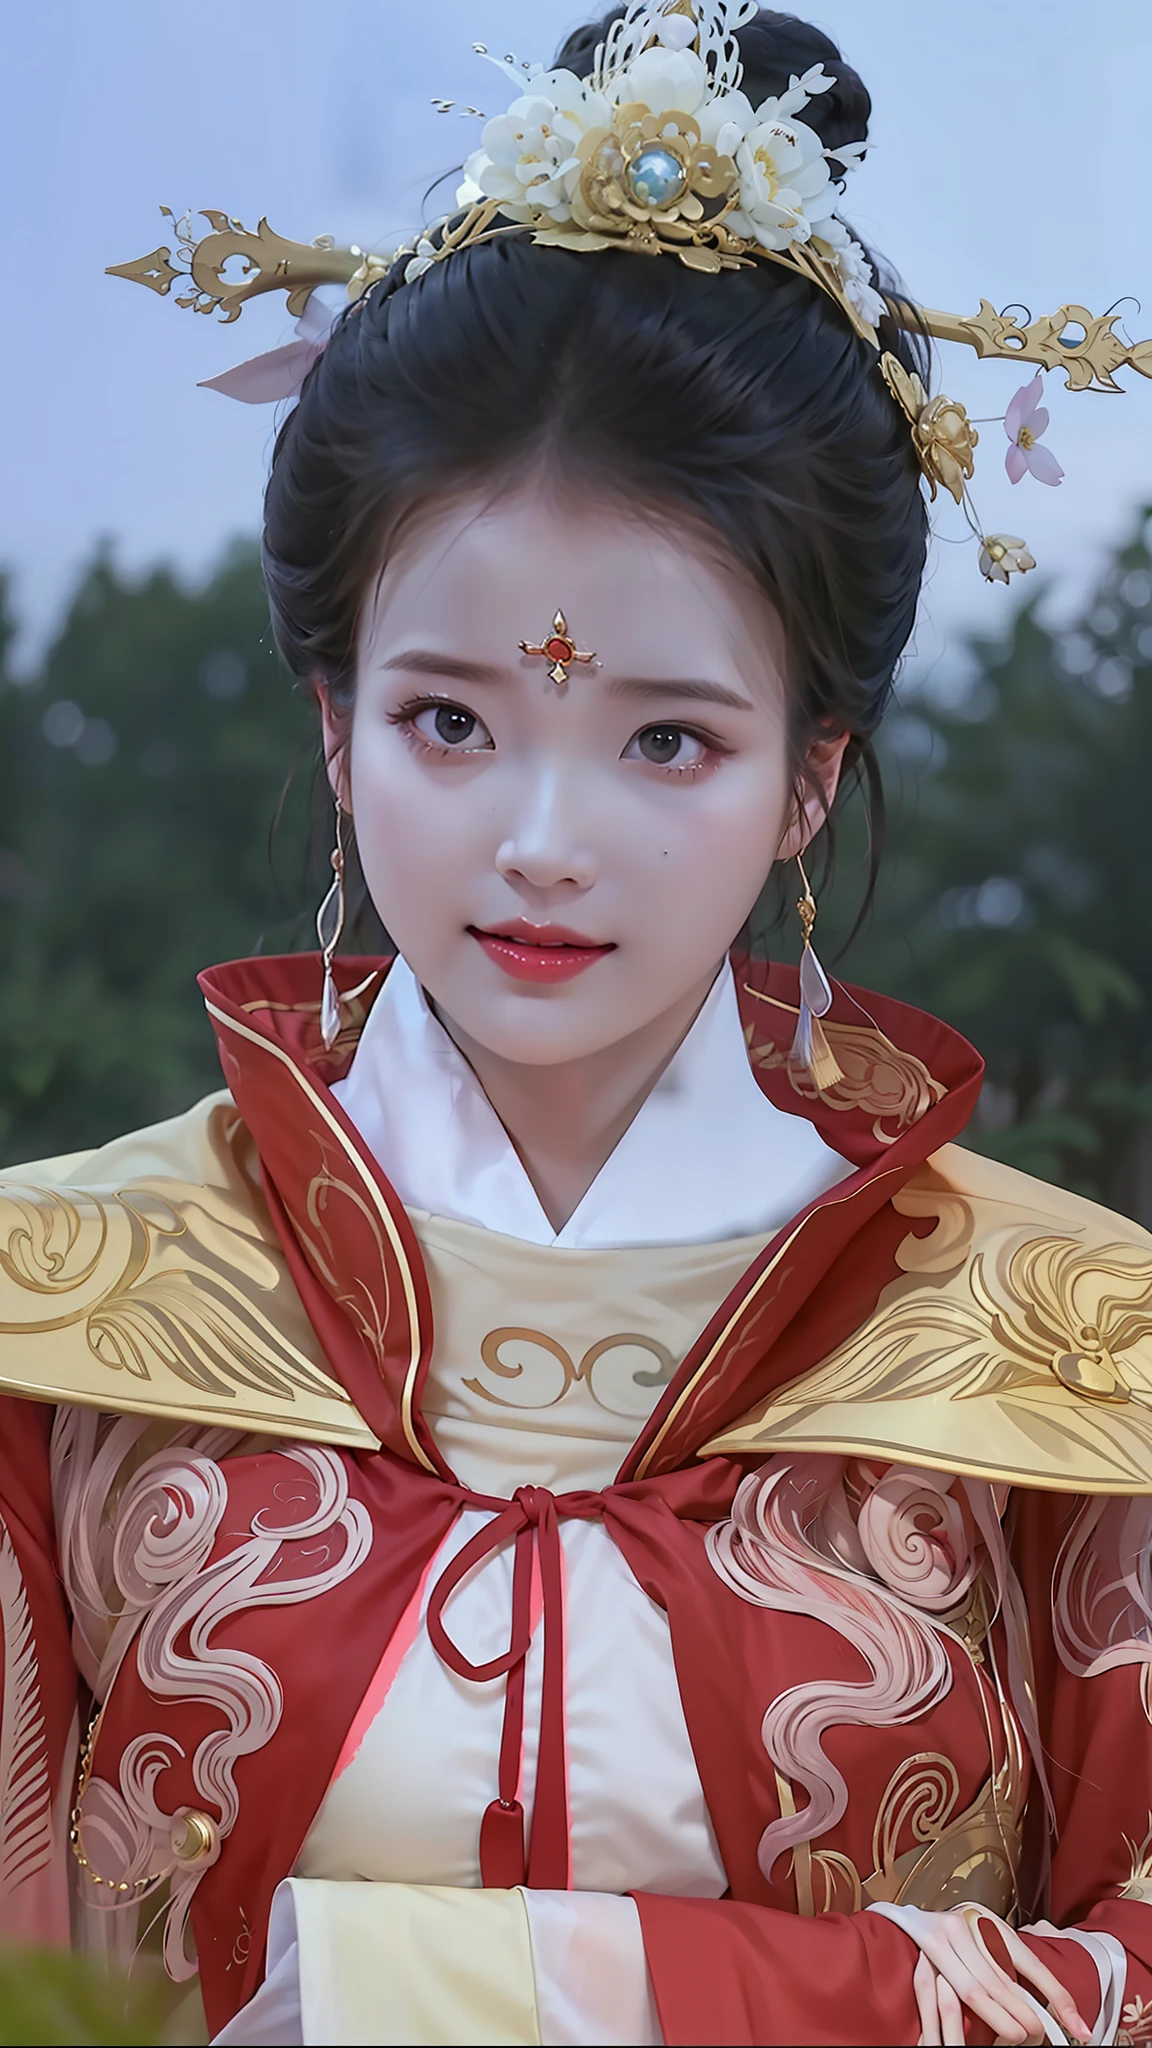 빨간색과 금색 드레스를 입은 여성의 클로즈업, 고대 중국 공주, 궁전 ， 한푸의 소녀, 중국 공주, 당나라의 아름다운 표현, 리메이슈에게 영감을 받아, 아름다운 환상의 황후, 고대 중국의 미인, 고대 아시아 왕조의 공주, 란잉에게서 영감을 받은 작품, 중국 황후, Zhao Yuan에게서 영감을 받은 작품, Qiu Ying에게 영감을 받아